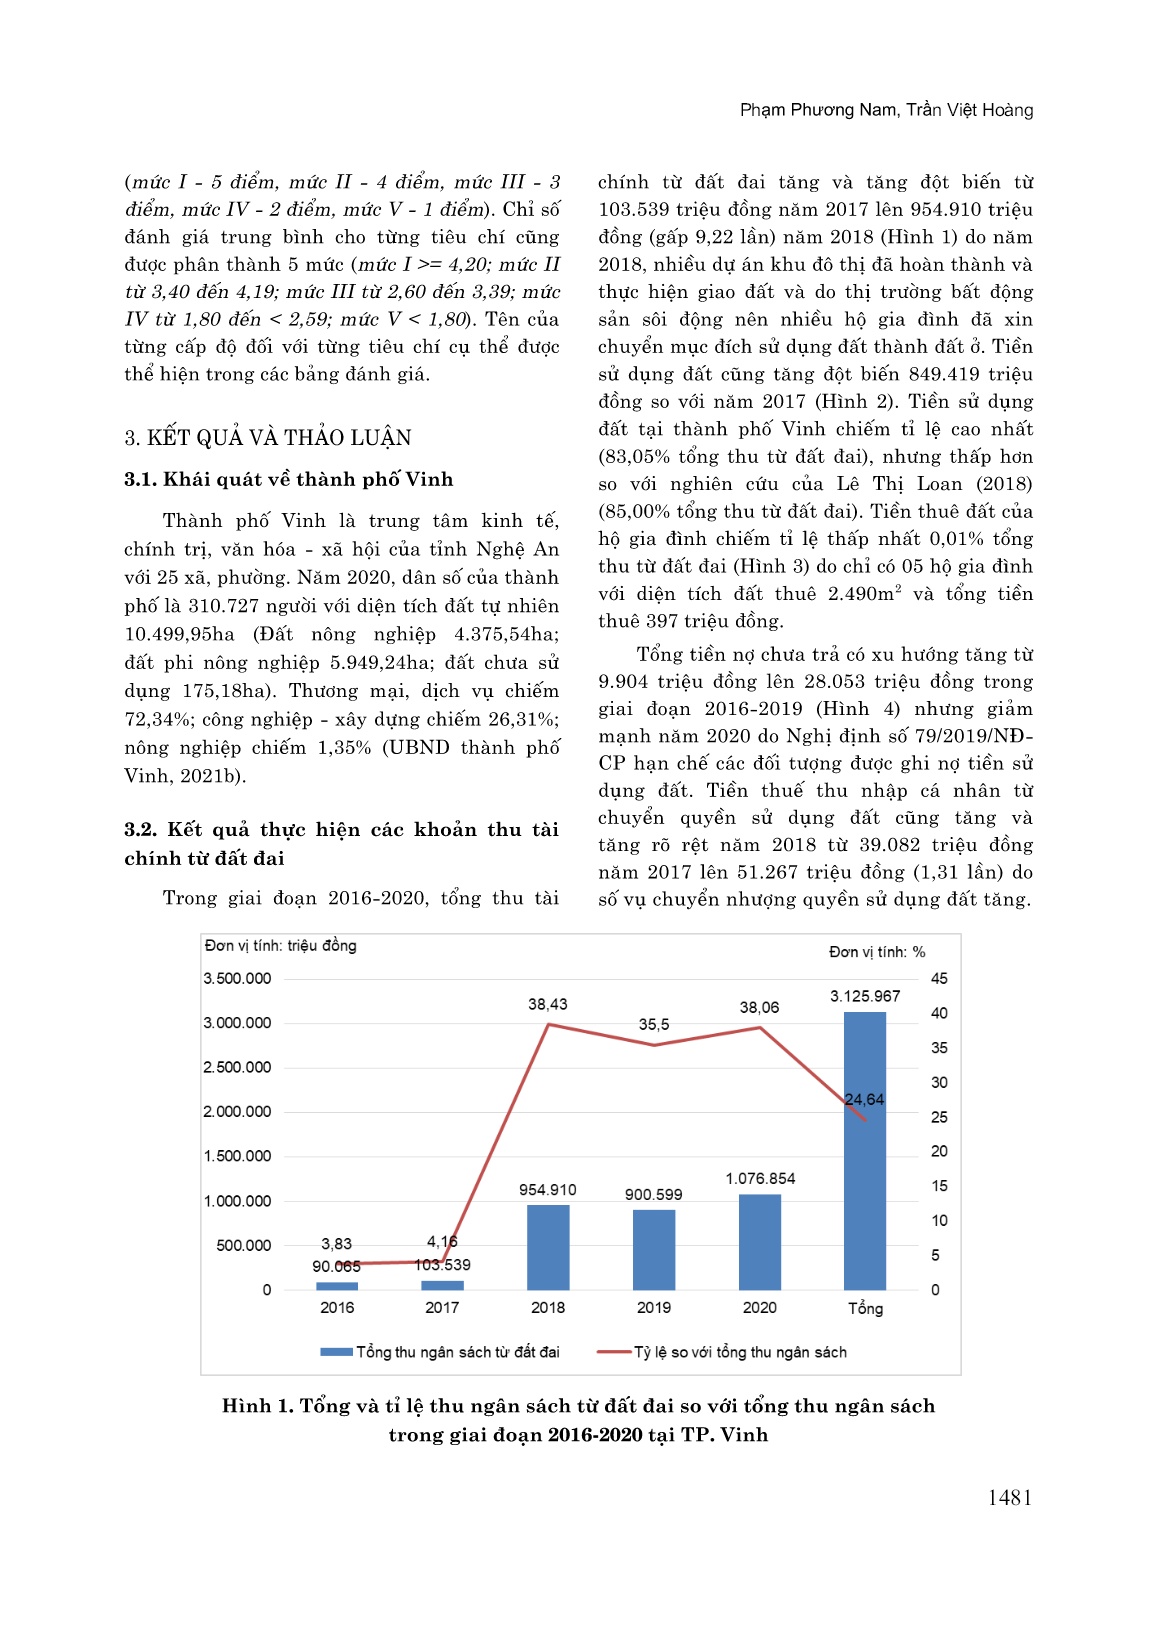 Đánh giá thực hiện các khoản thu tài chính từ đất đai tại Thành phố Vinh, tỉnh Nghệ An trang 3